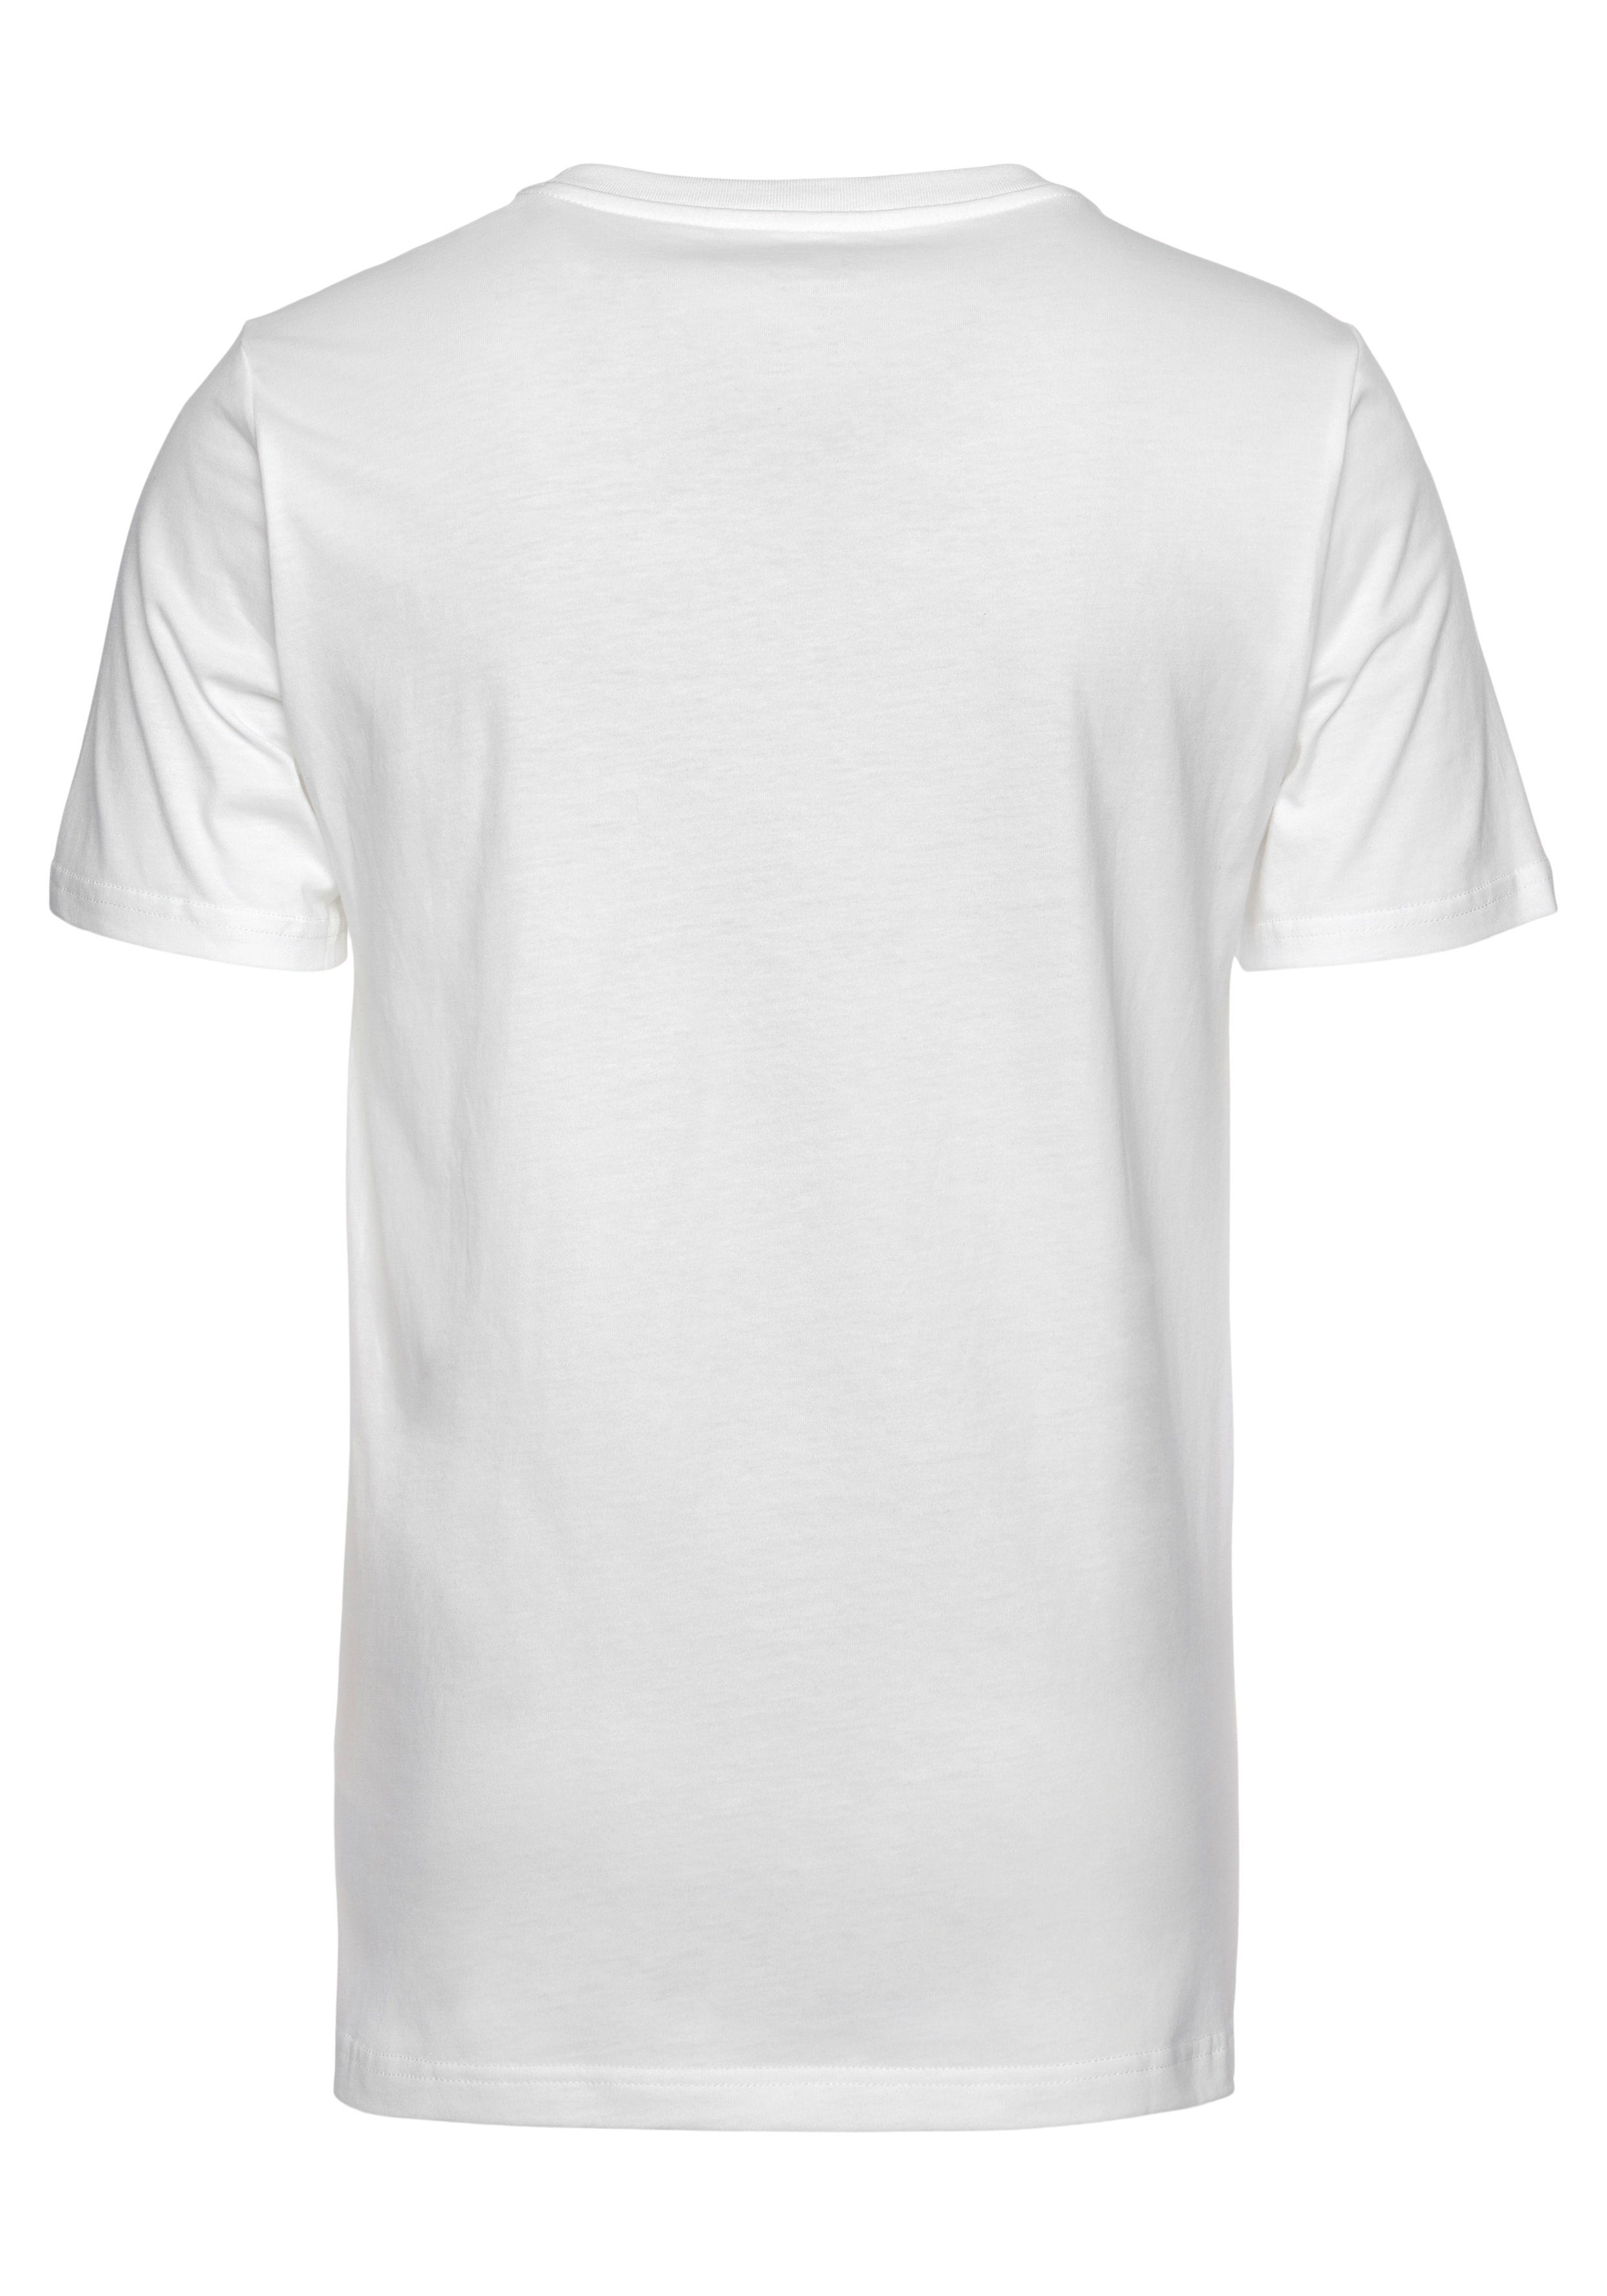 New NB LOGO T-Shirt STACKED weiß T-SHIRT Balance ESSENTIALS